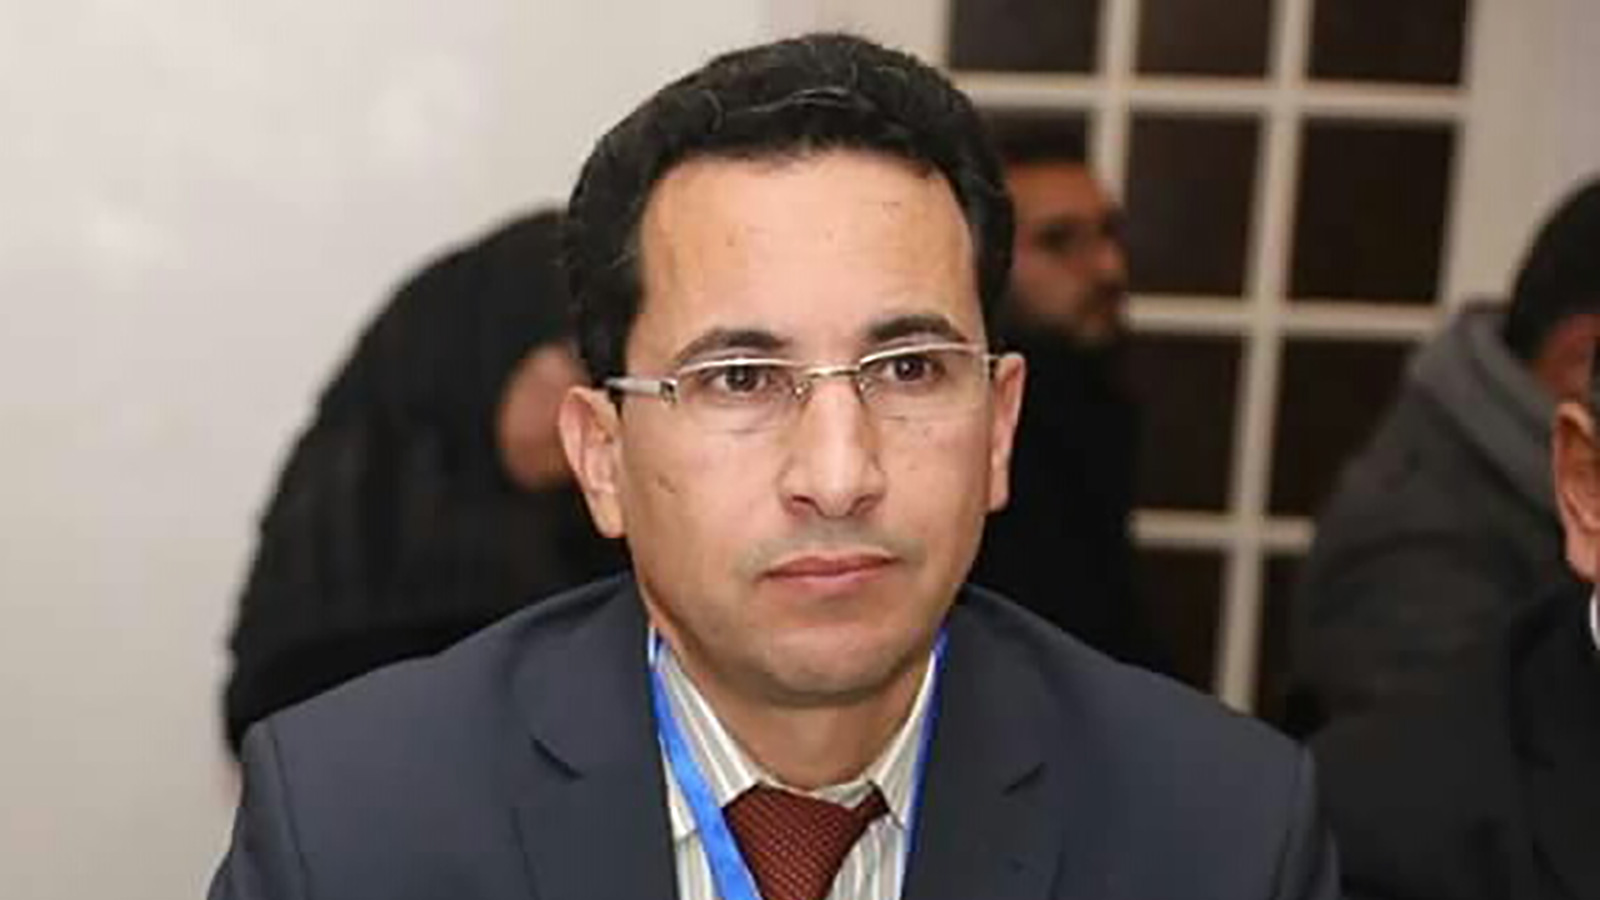 عباس بوغالم انتقد مضمون تصريحان بنكيران (الجزيرة نت)